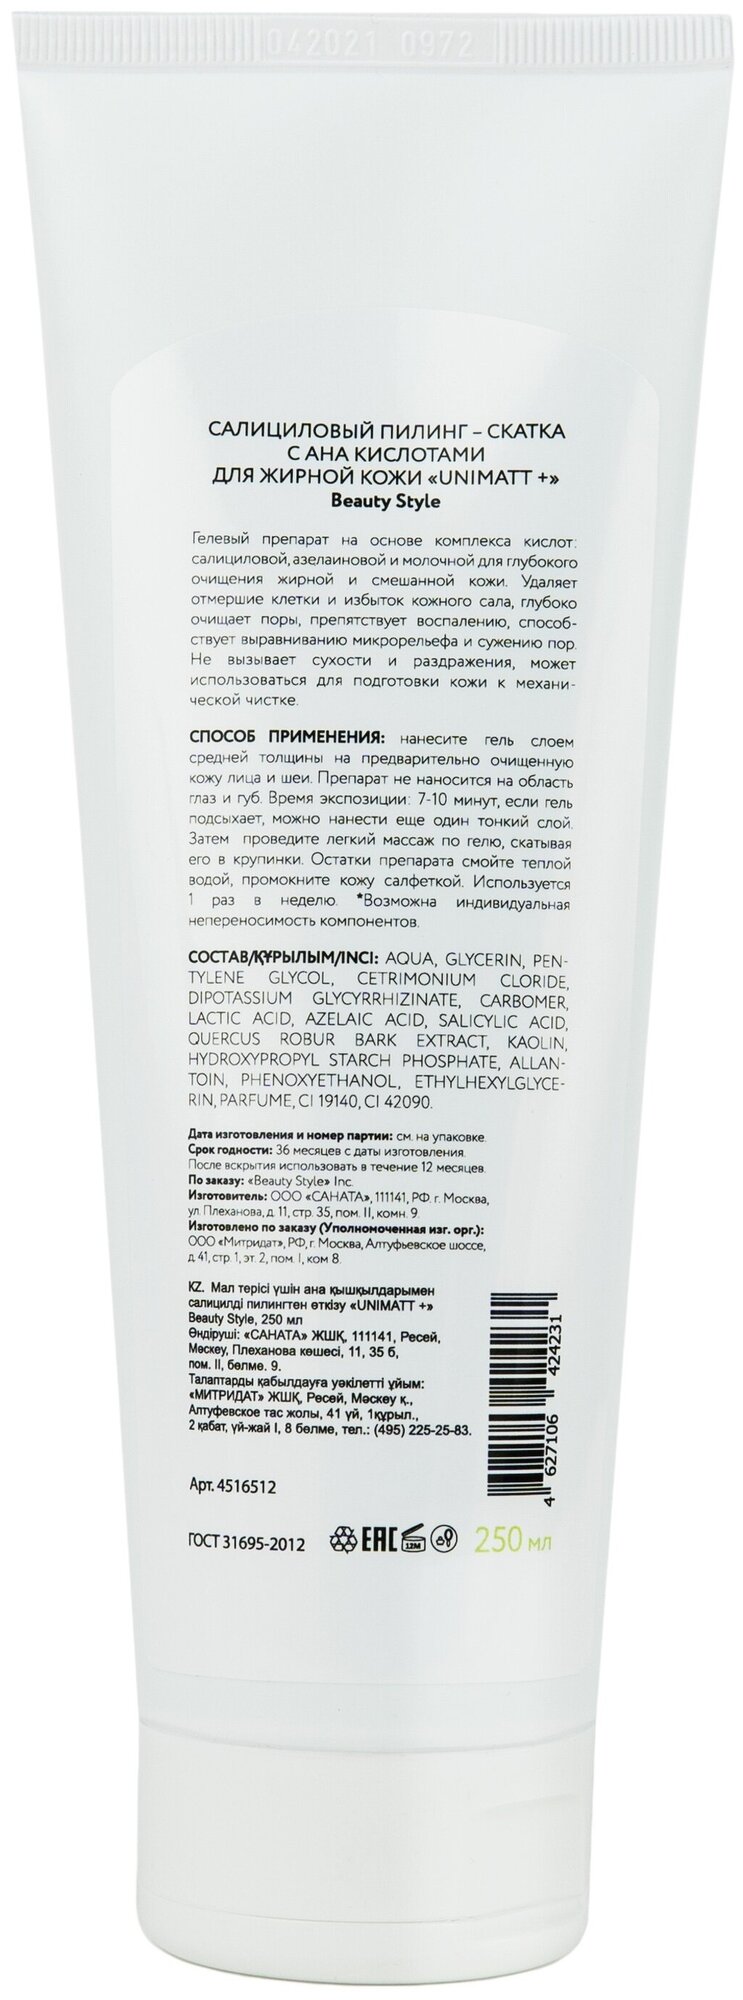 Салициловый пилинг-скатка с AHA кислотами для жирной кожи Unimatt + (4516511PRO, 460 мл) Beauty Style - фото №3